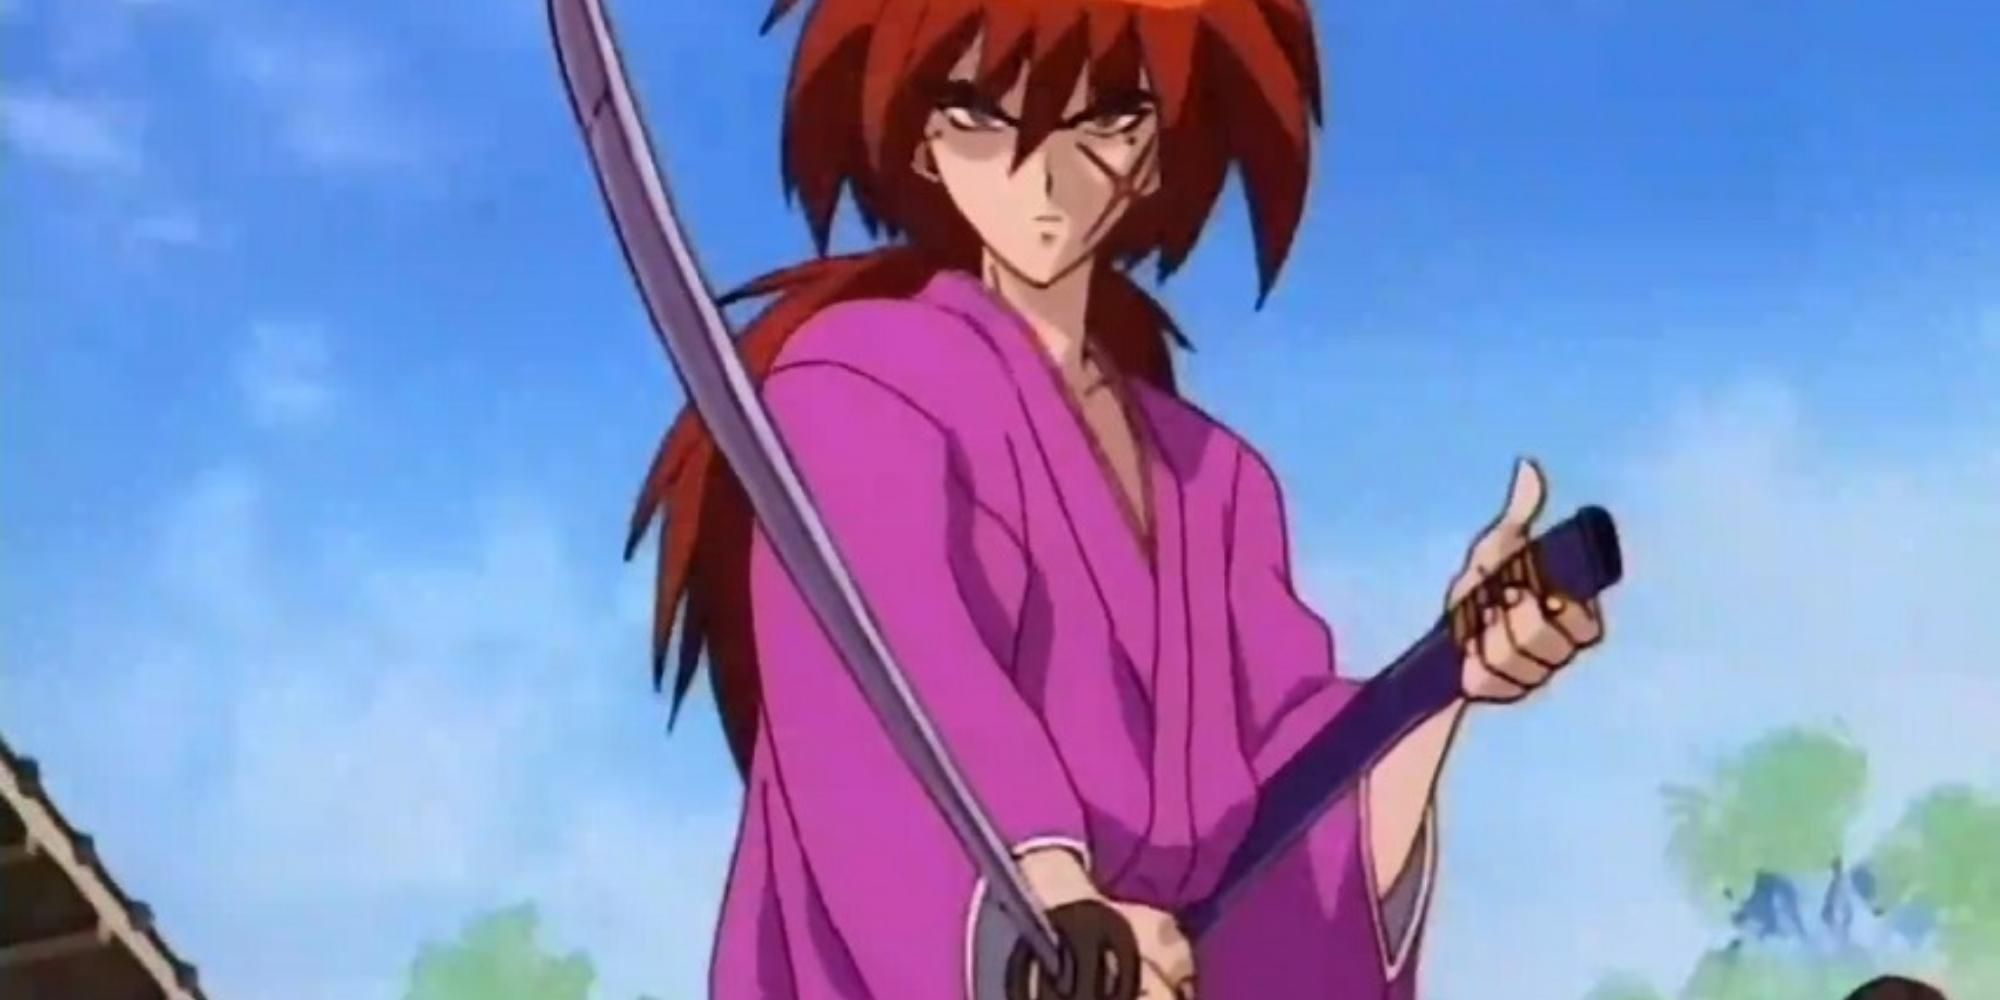 Kenshin Himura in Rurouni Kenshin